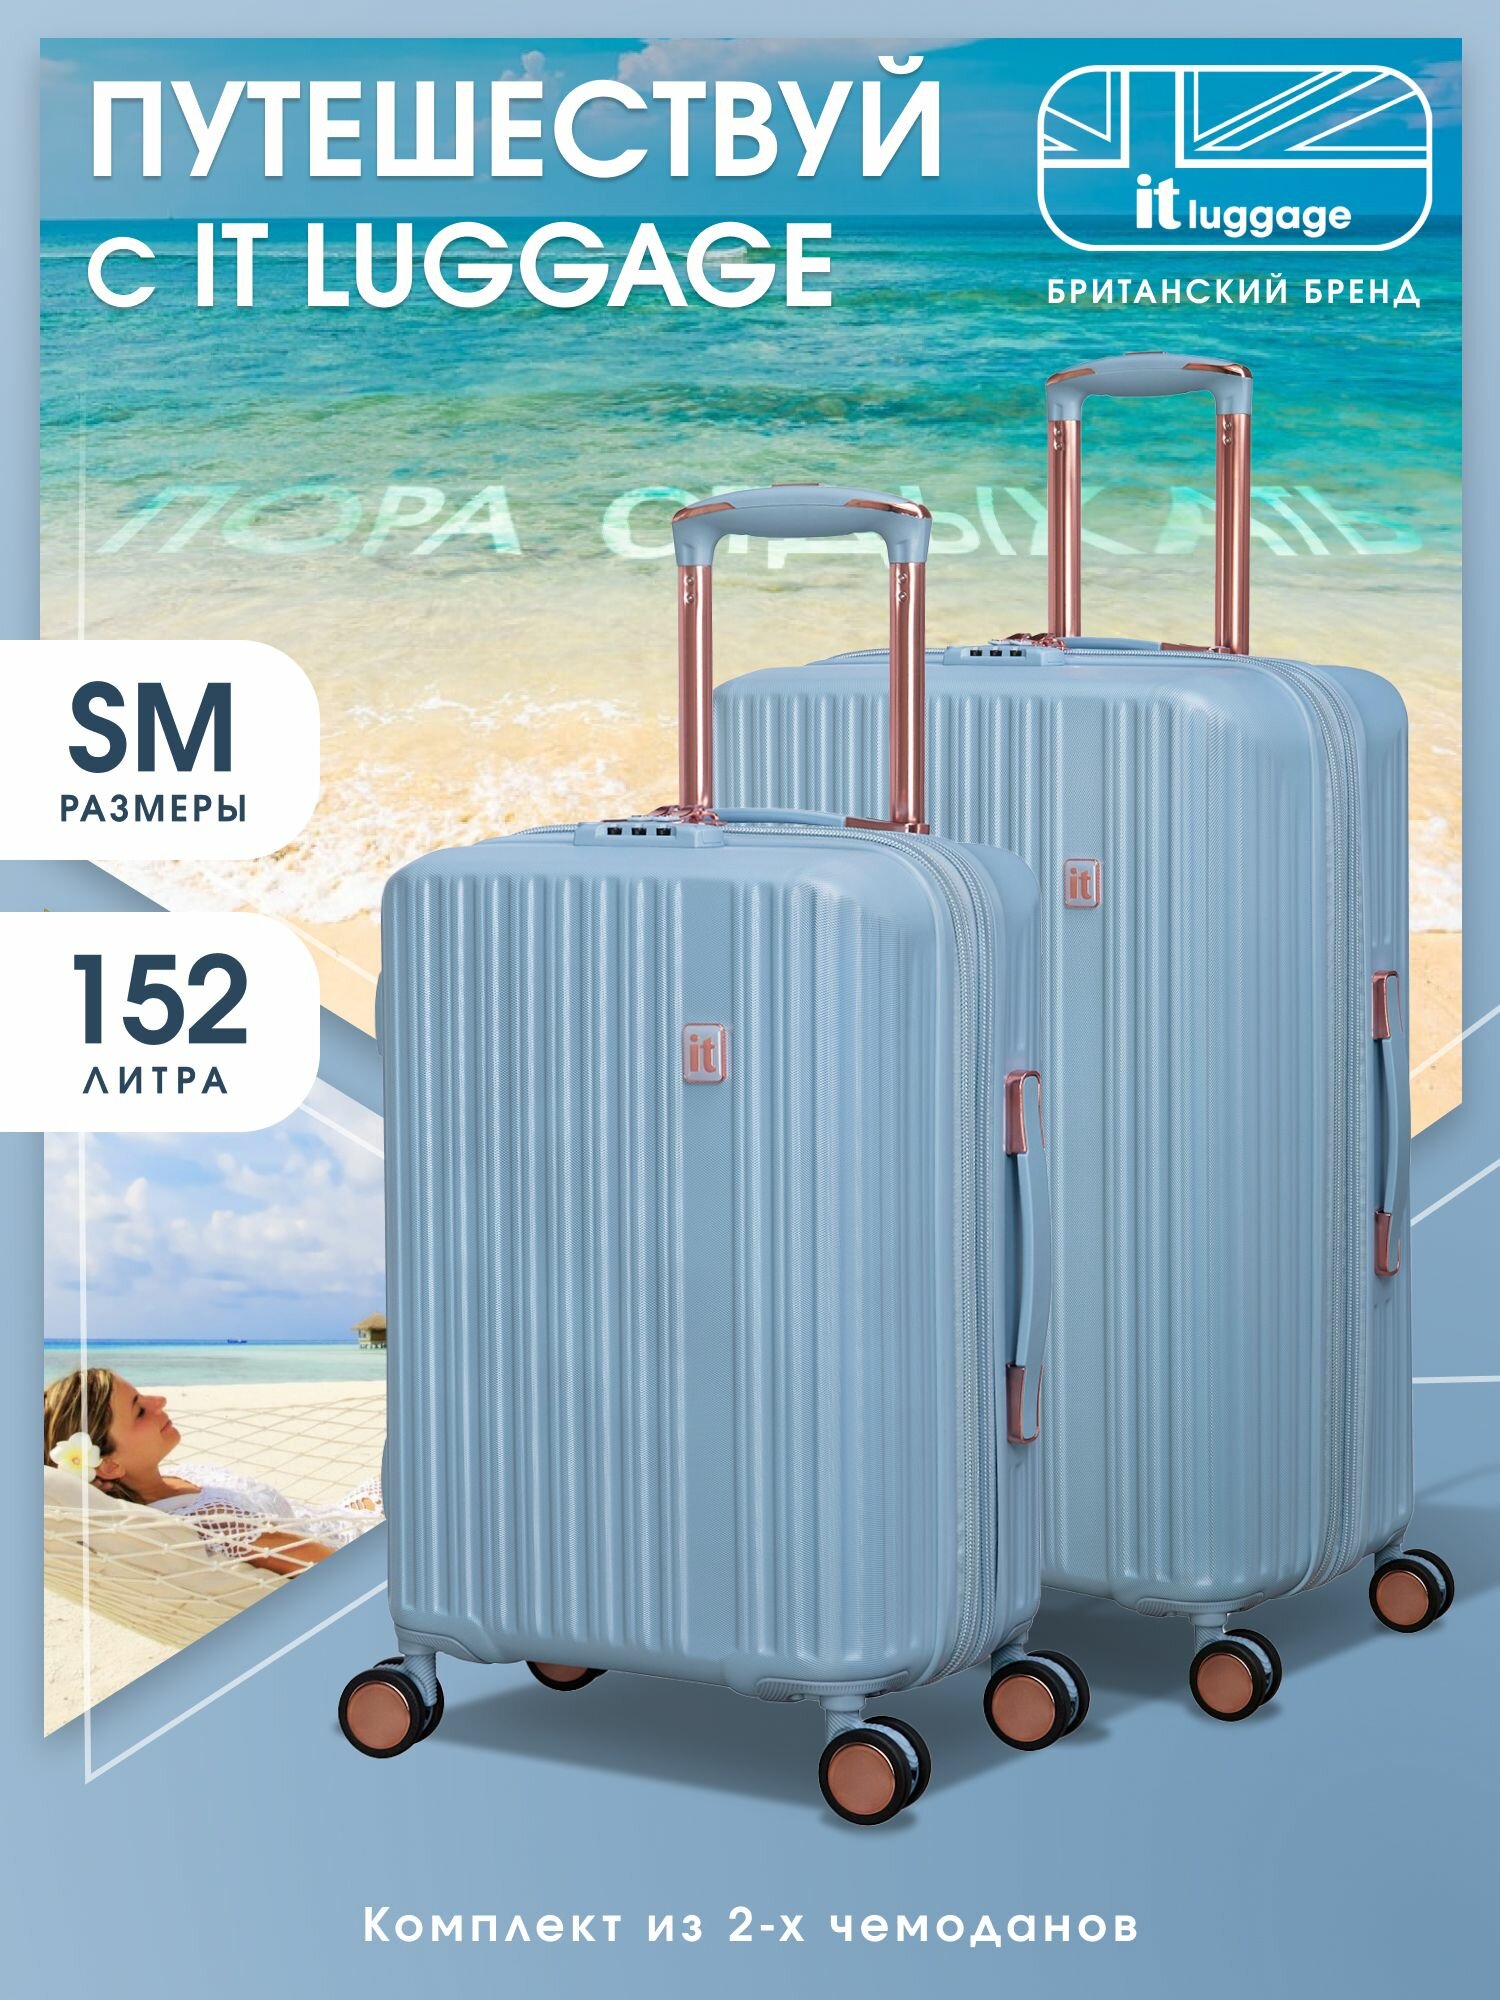 Комплект чемоданов IT Luggage, 2 шт.